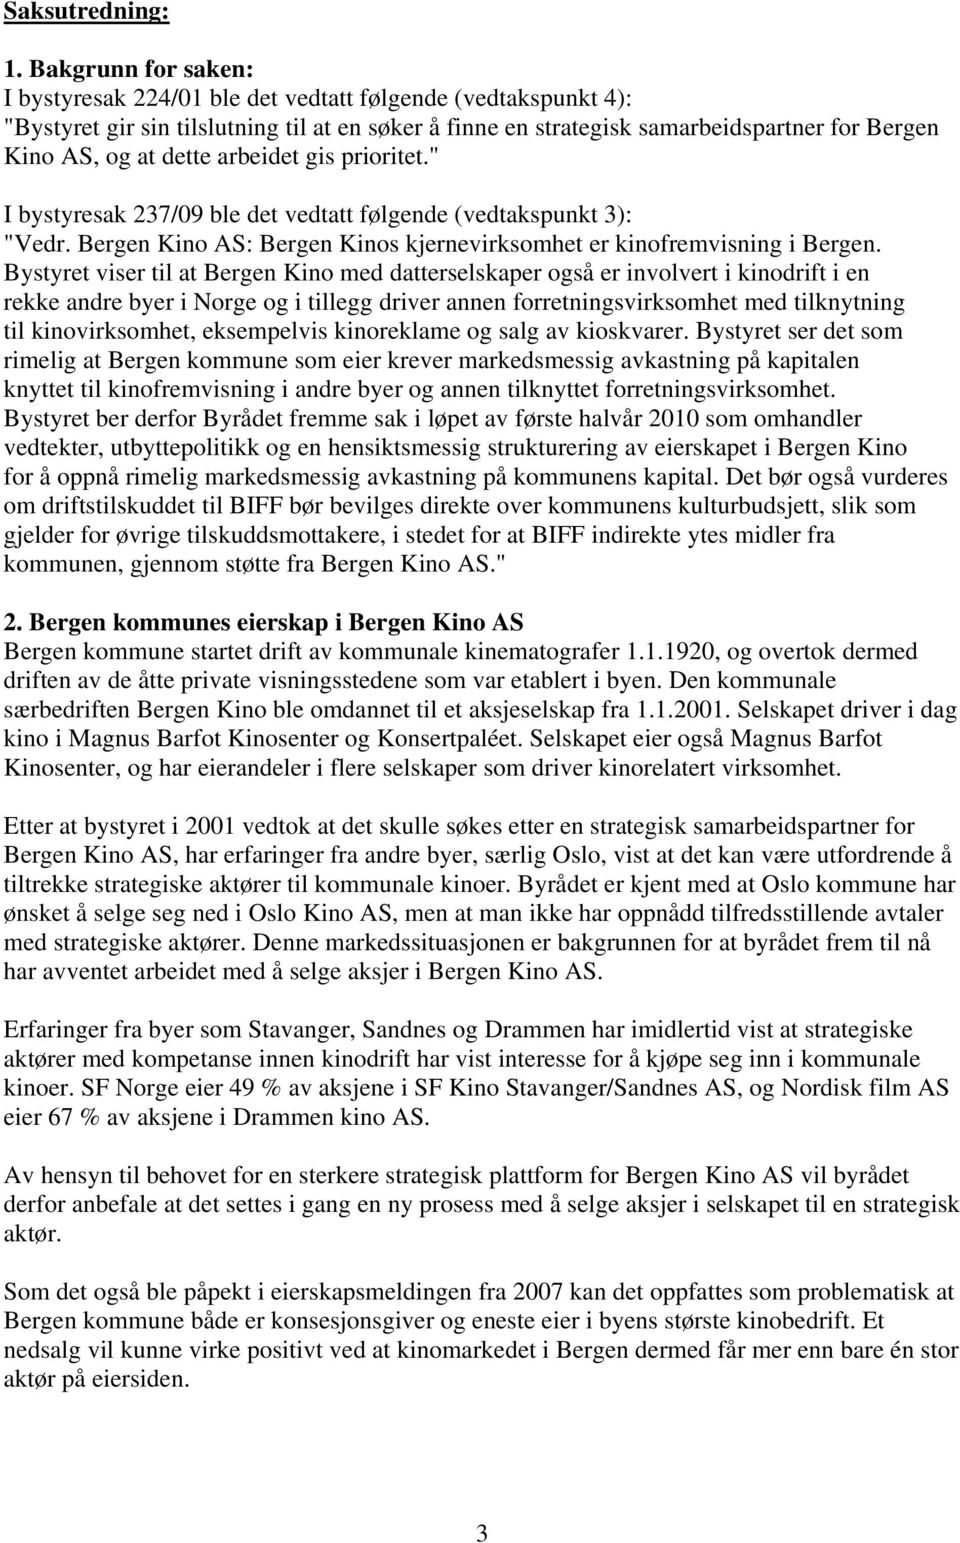 dette arbeidet gis prioritet." I bystyresak 237/09 ble det vedtatt følgende (vedtakspunkt 3): "Vedr. Bergen Kino AS: Bergen Kinos kjernevirksomhet er kinofremvisning i Bergen.